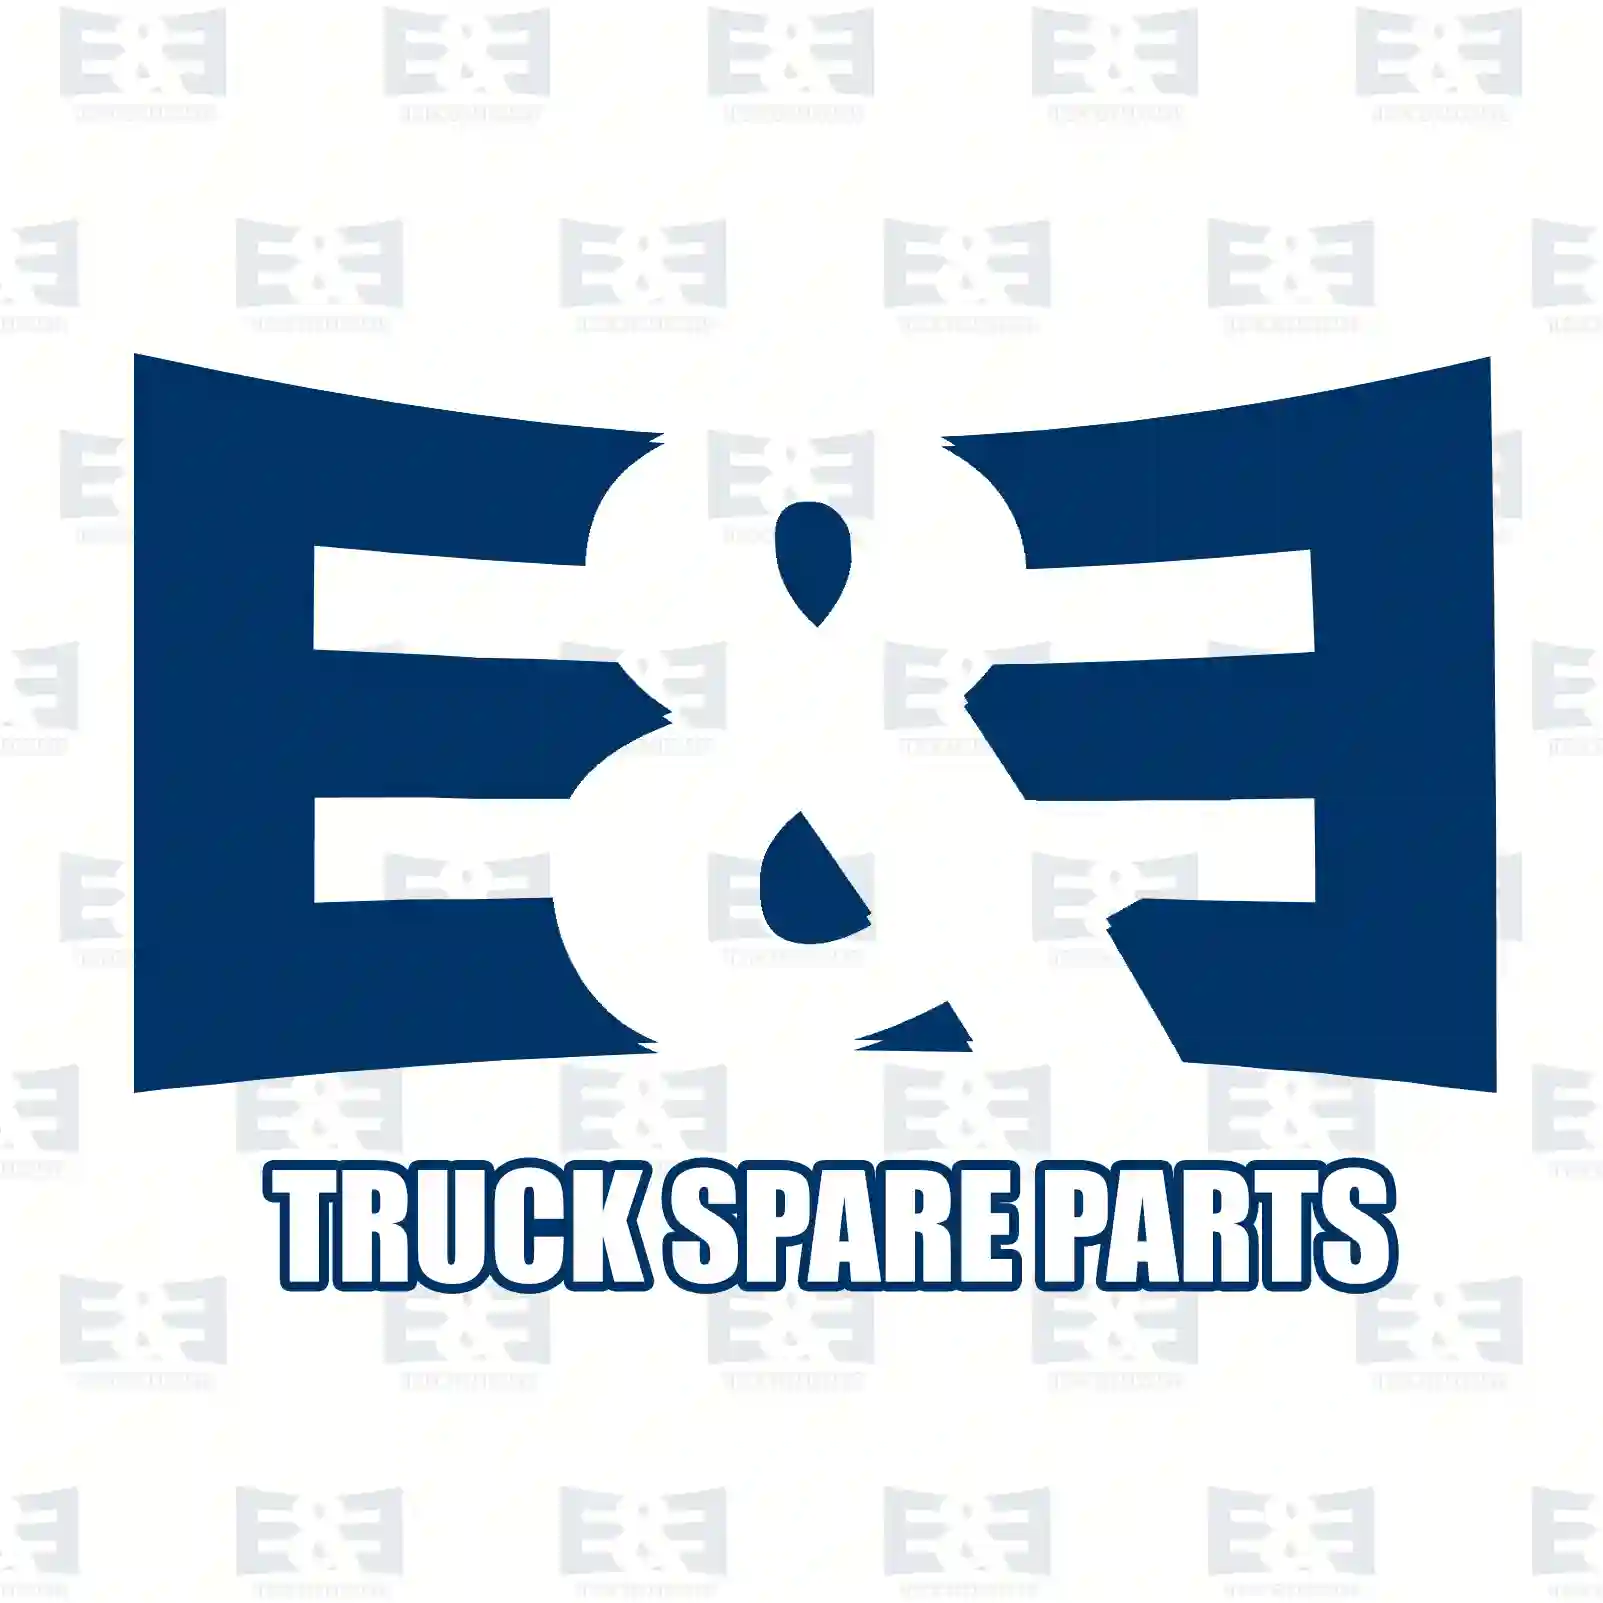 O-ring, 2E2285275, 06563331169, 0019977048, 0039976848, ZG02905-0008 ||  2E2285275 E&E Truck Spare Parts | Truck Spare Parts, Auotomotive Spare Parts O-ring, 2E2285275, 06563331169, 0019977048, 0039976848, ZG02905-0008 ||  2E2285275 E&E Truck Spare Parts | Truck Spare Parts, Auotomotive Spare Parts